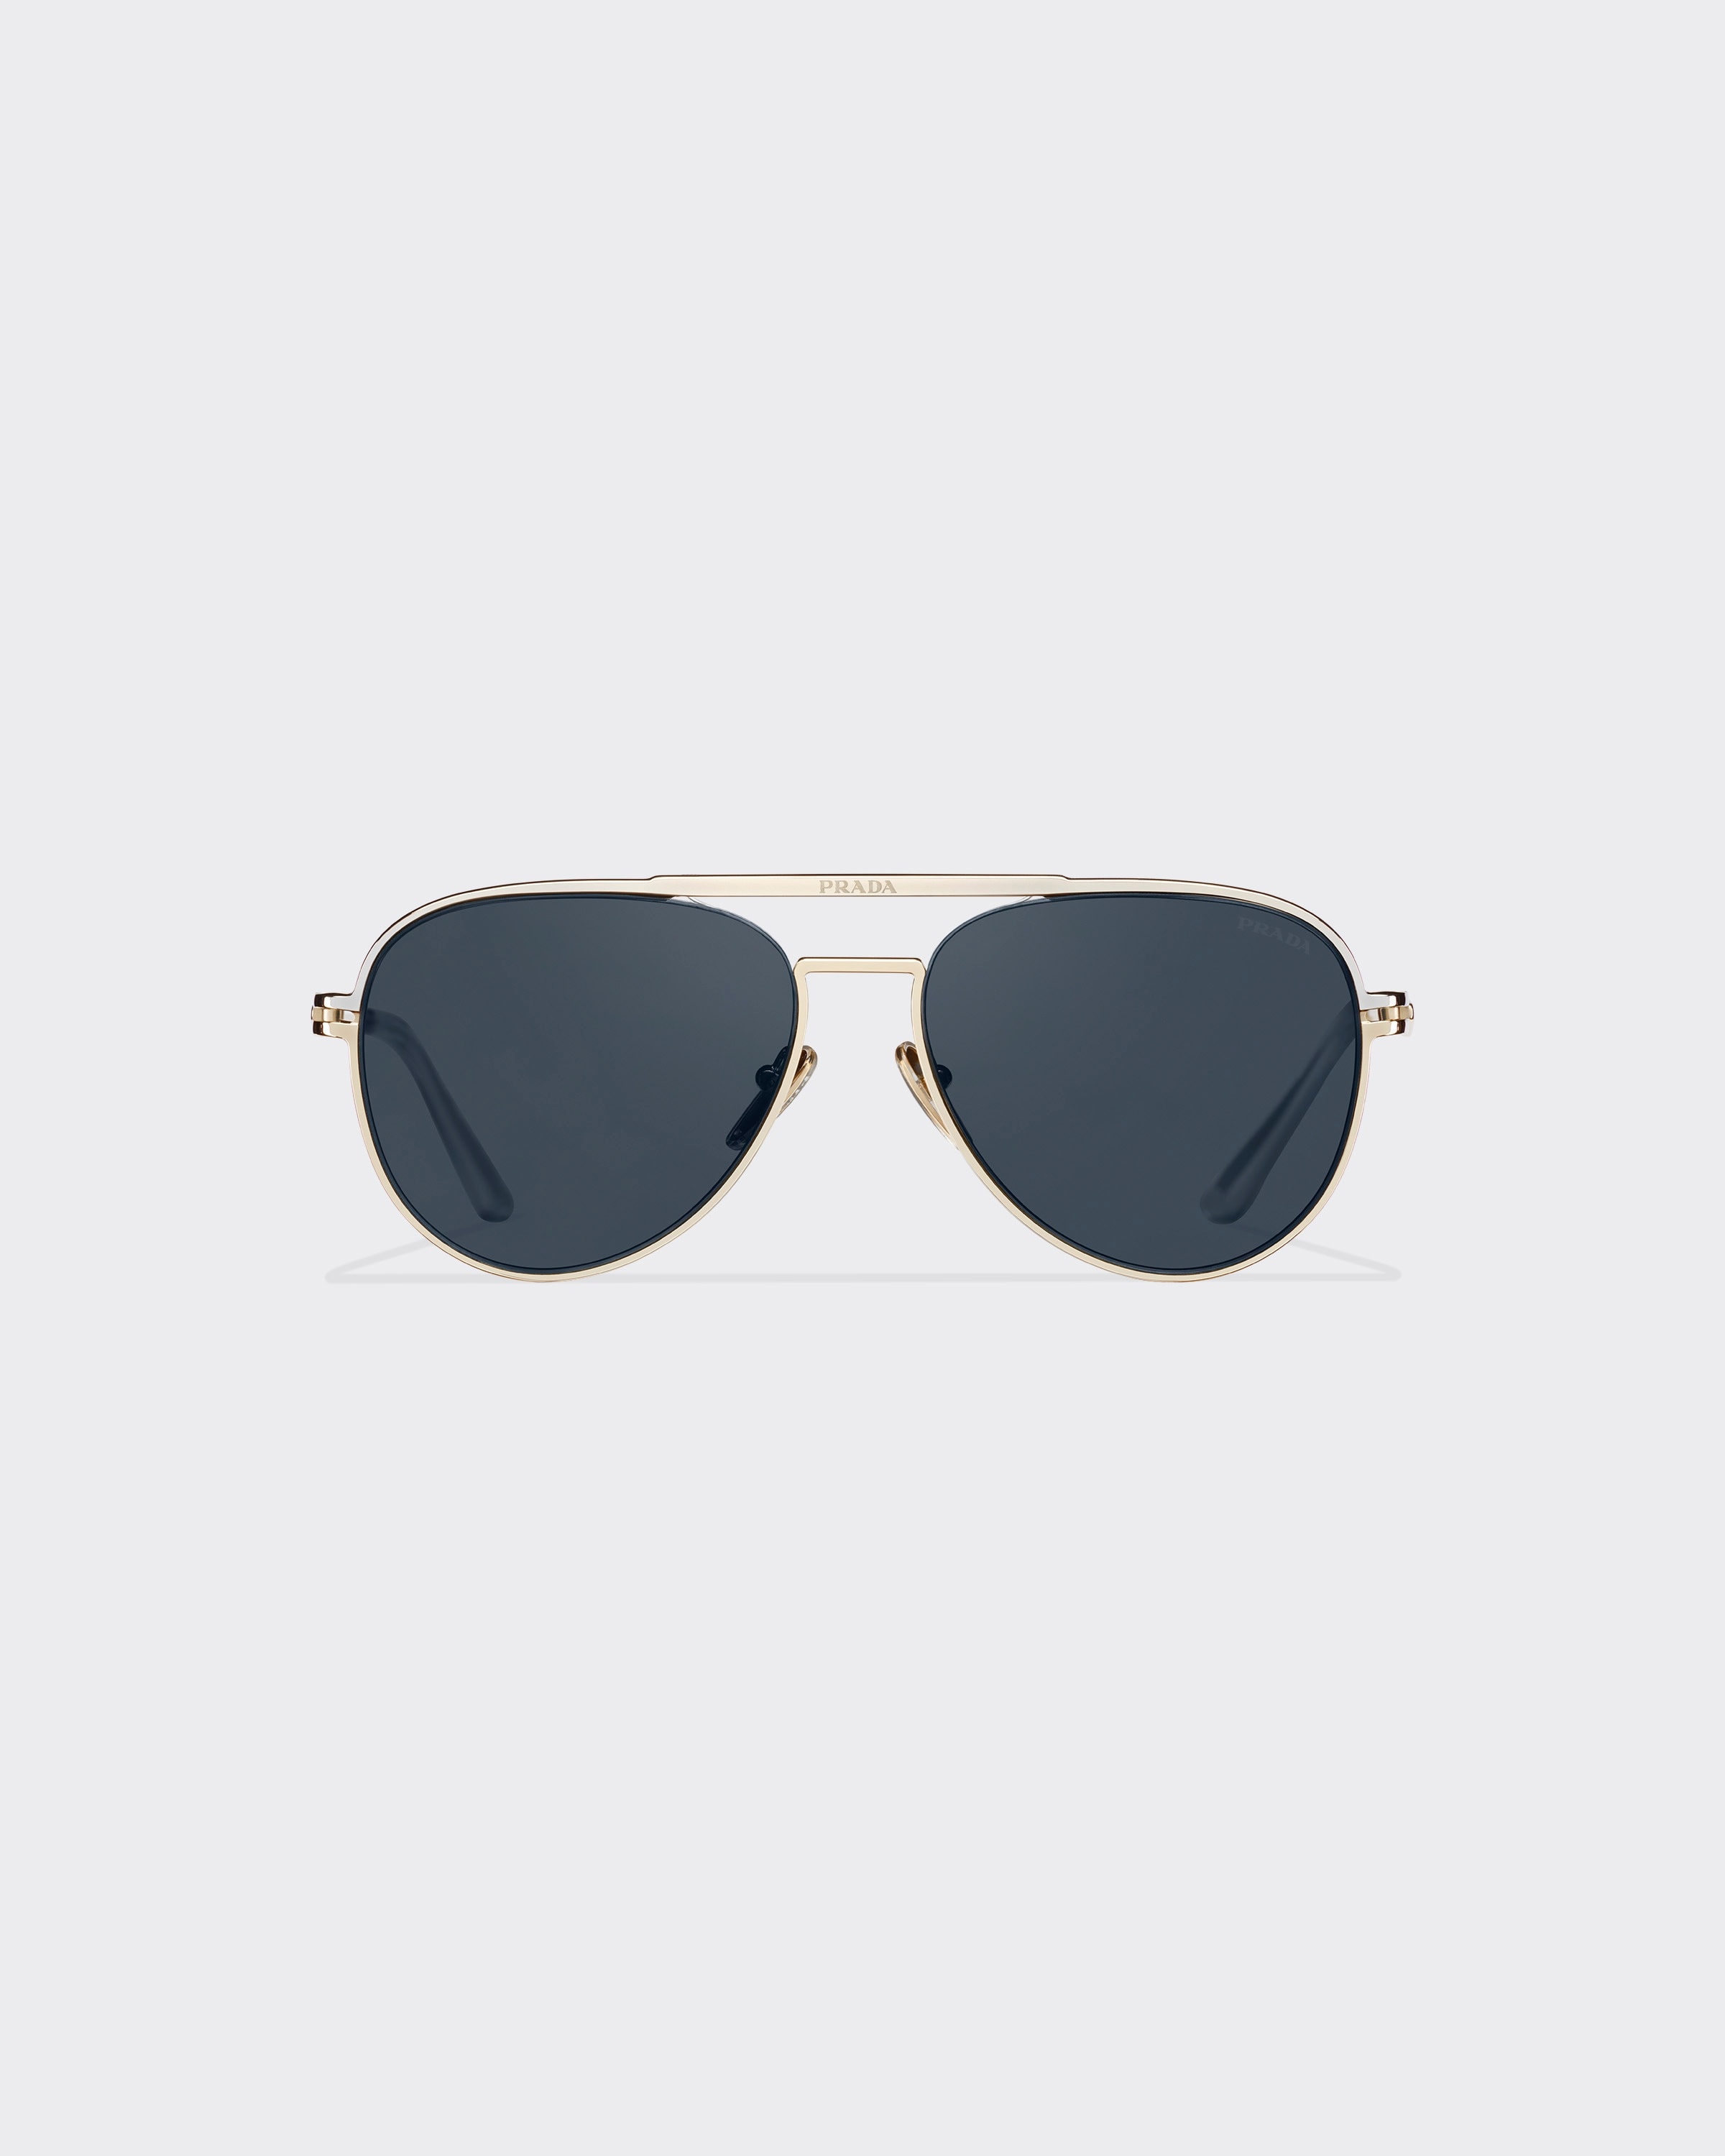 Sunglasses with Prada logo - 1